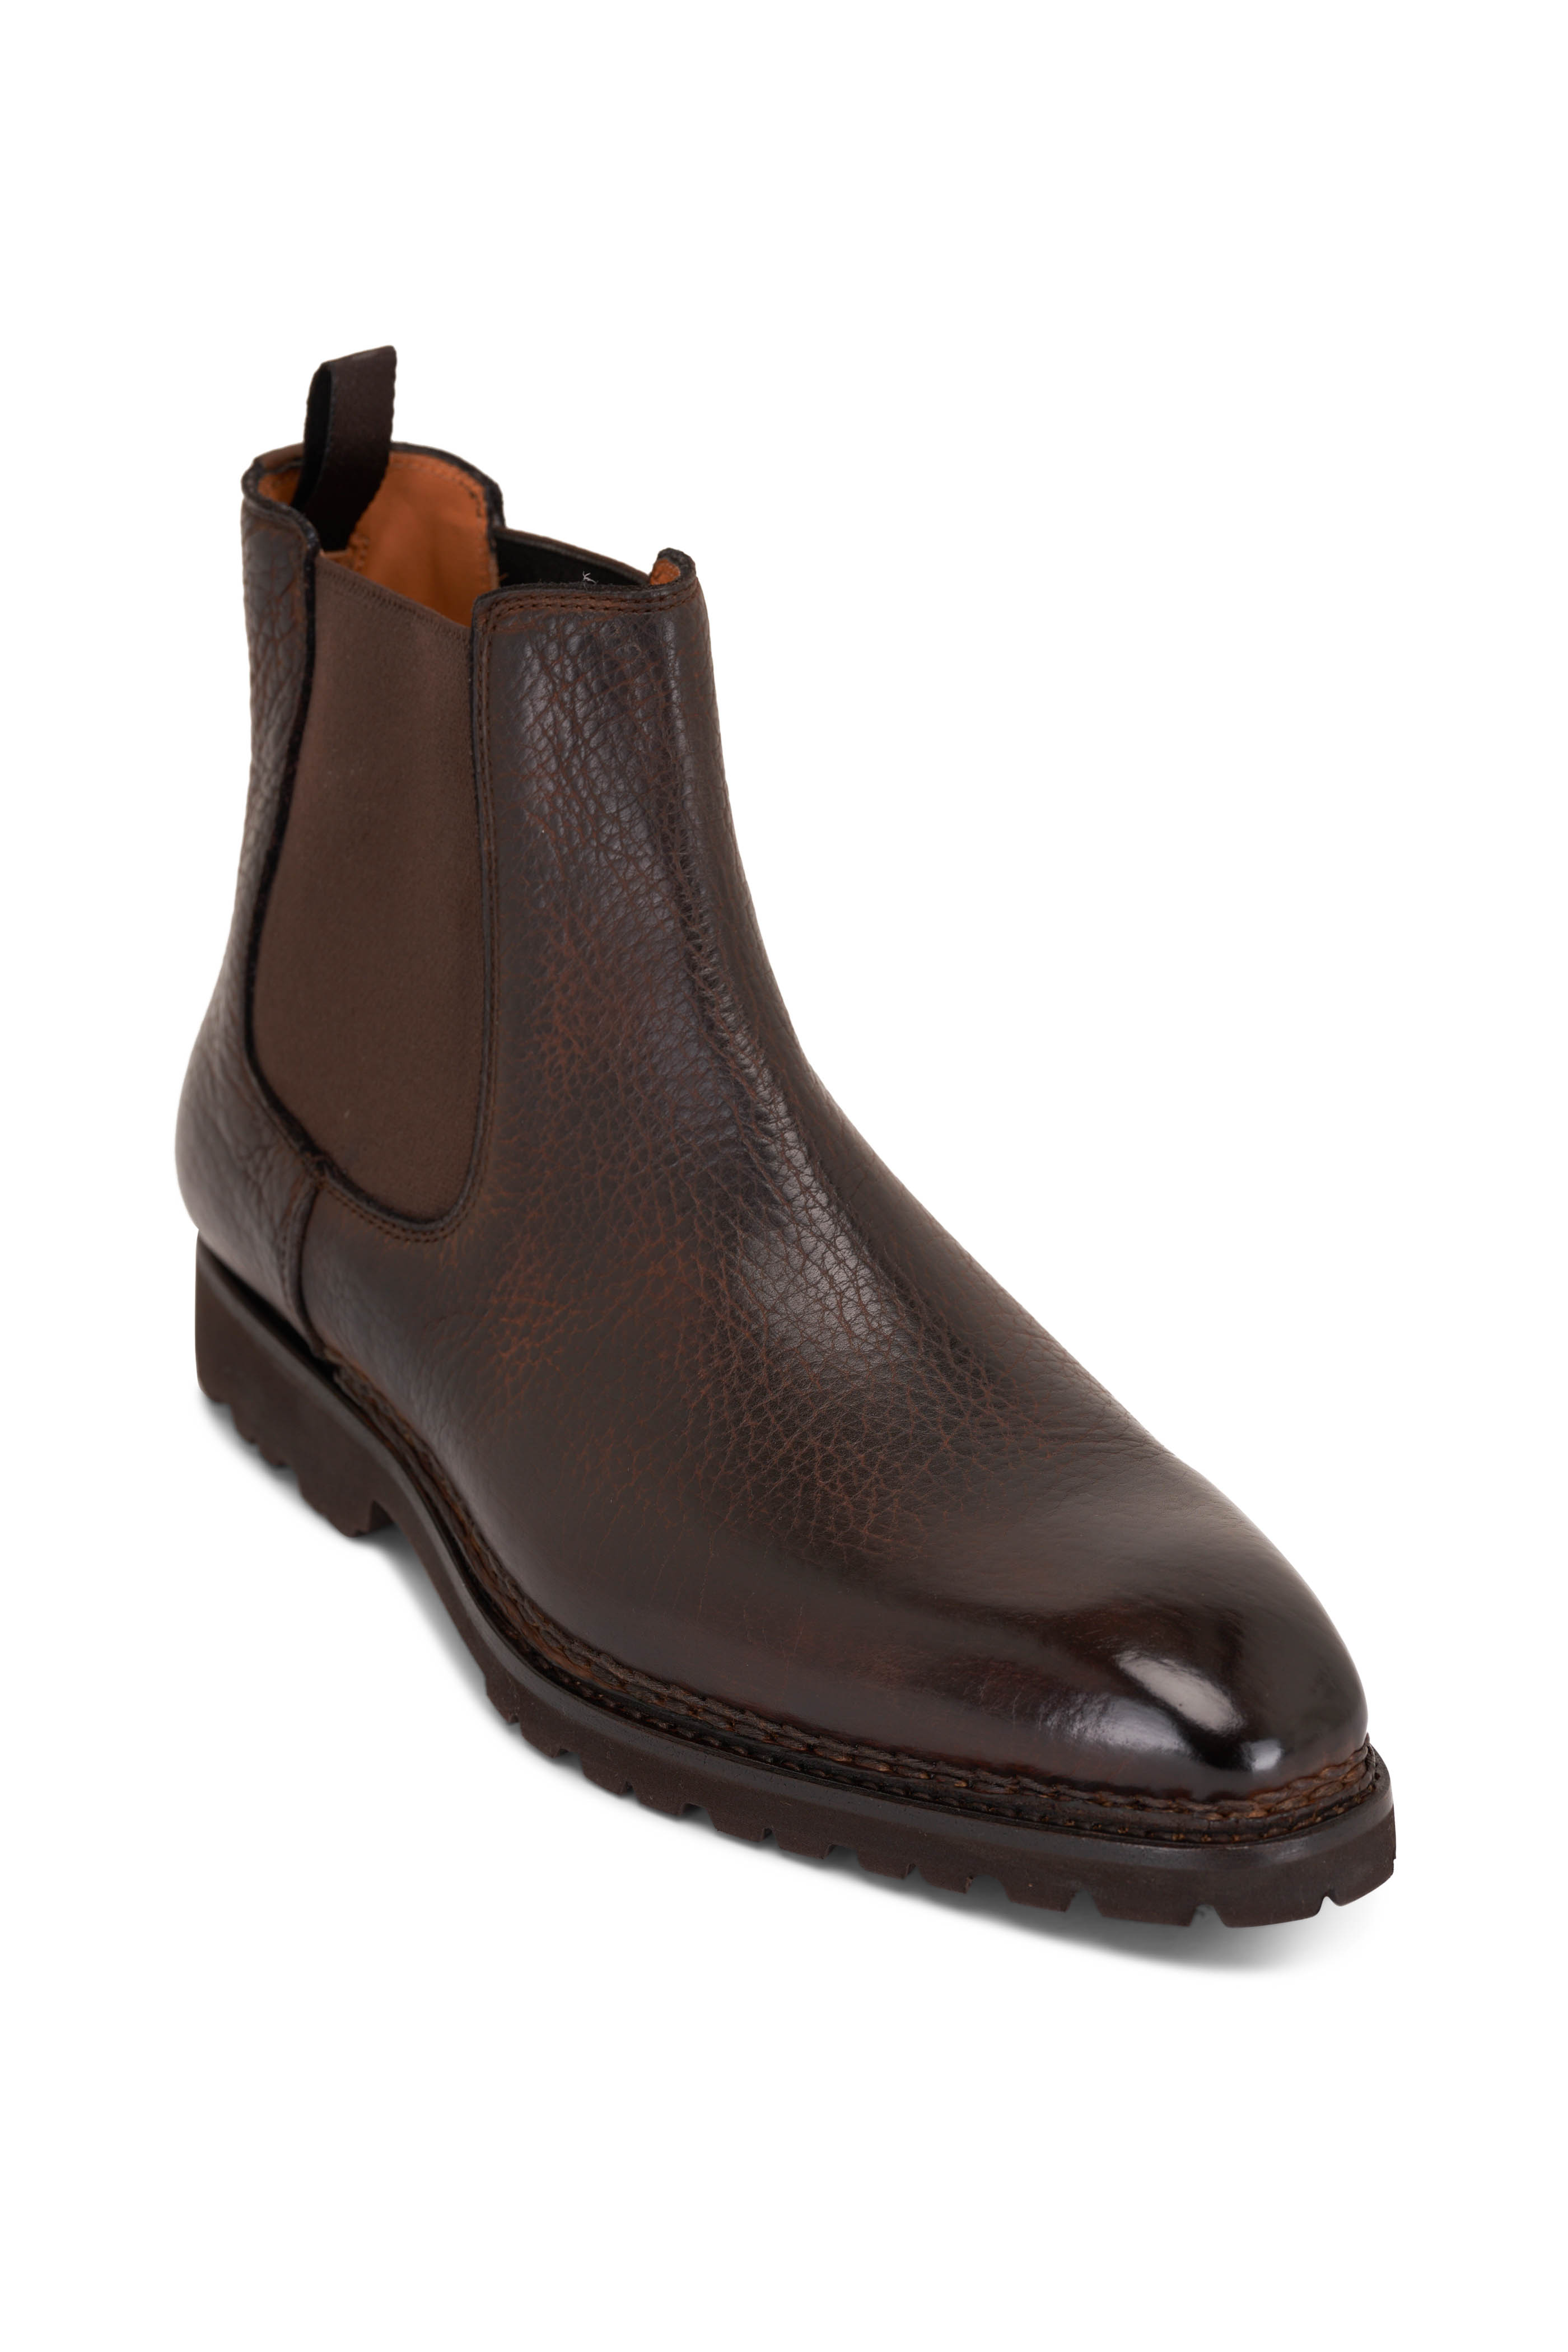 Berluti - Brunico Marrone Intenso Leather Boot Brown